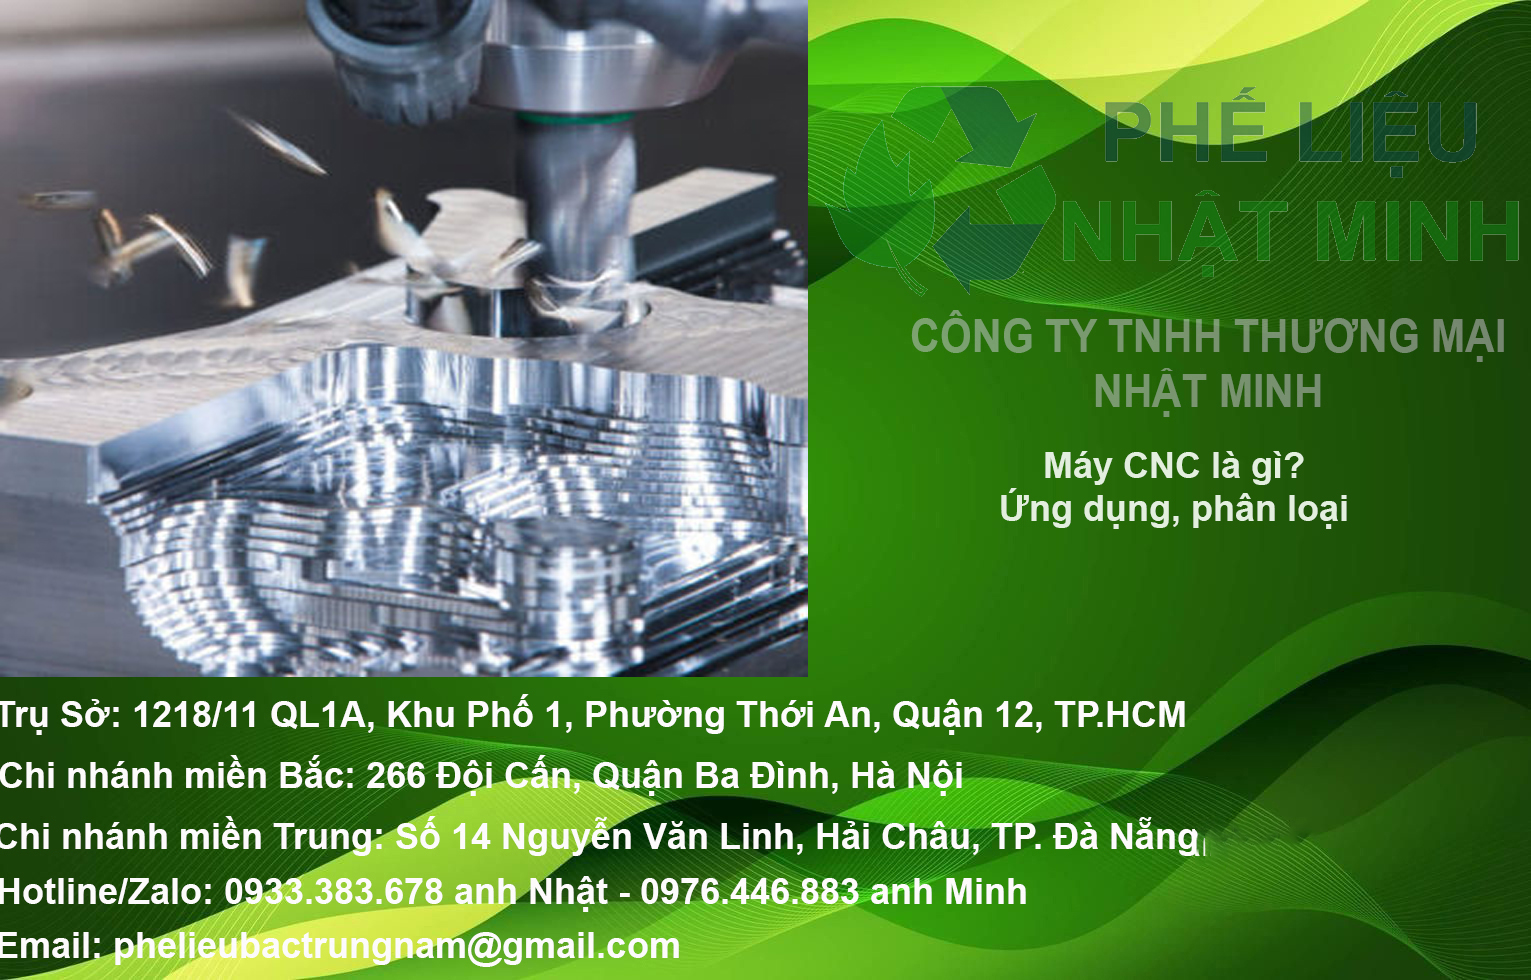 Máy CNC là gì? Nguyên lý hoạt động, ứng dụng và phân loại máy CNC